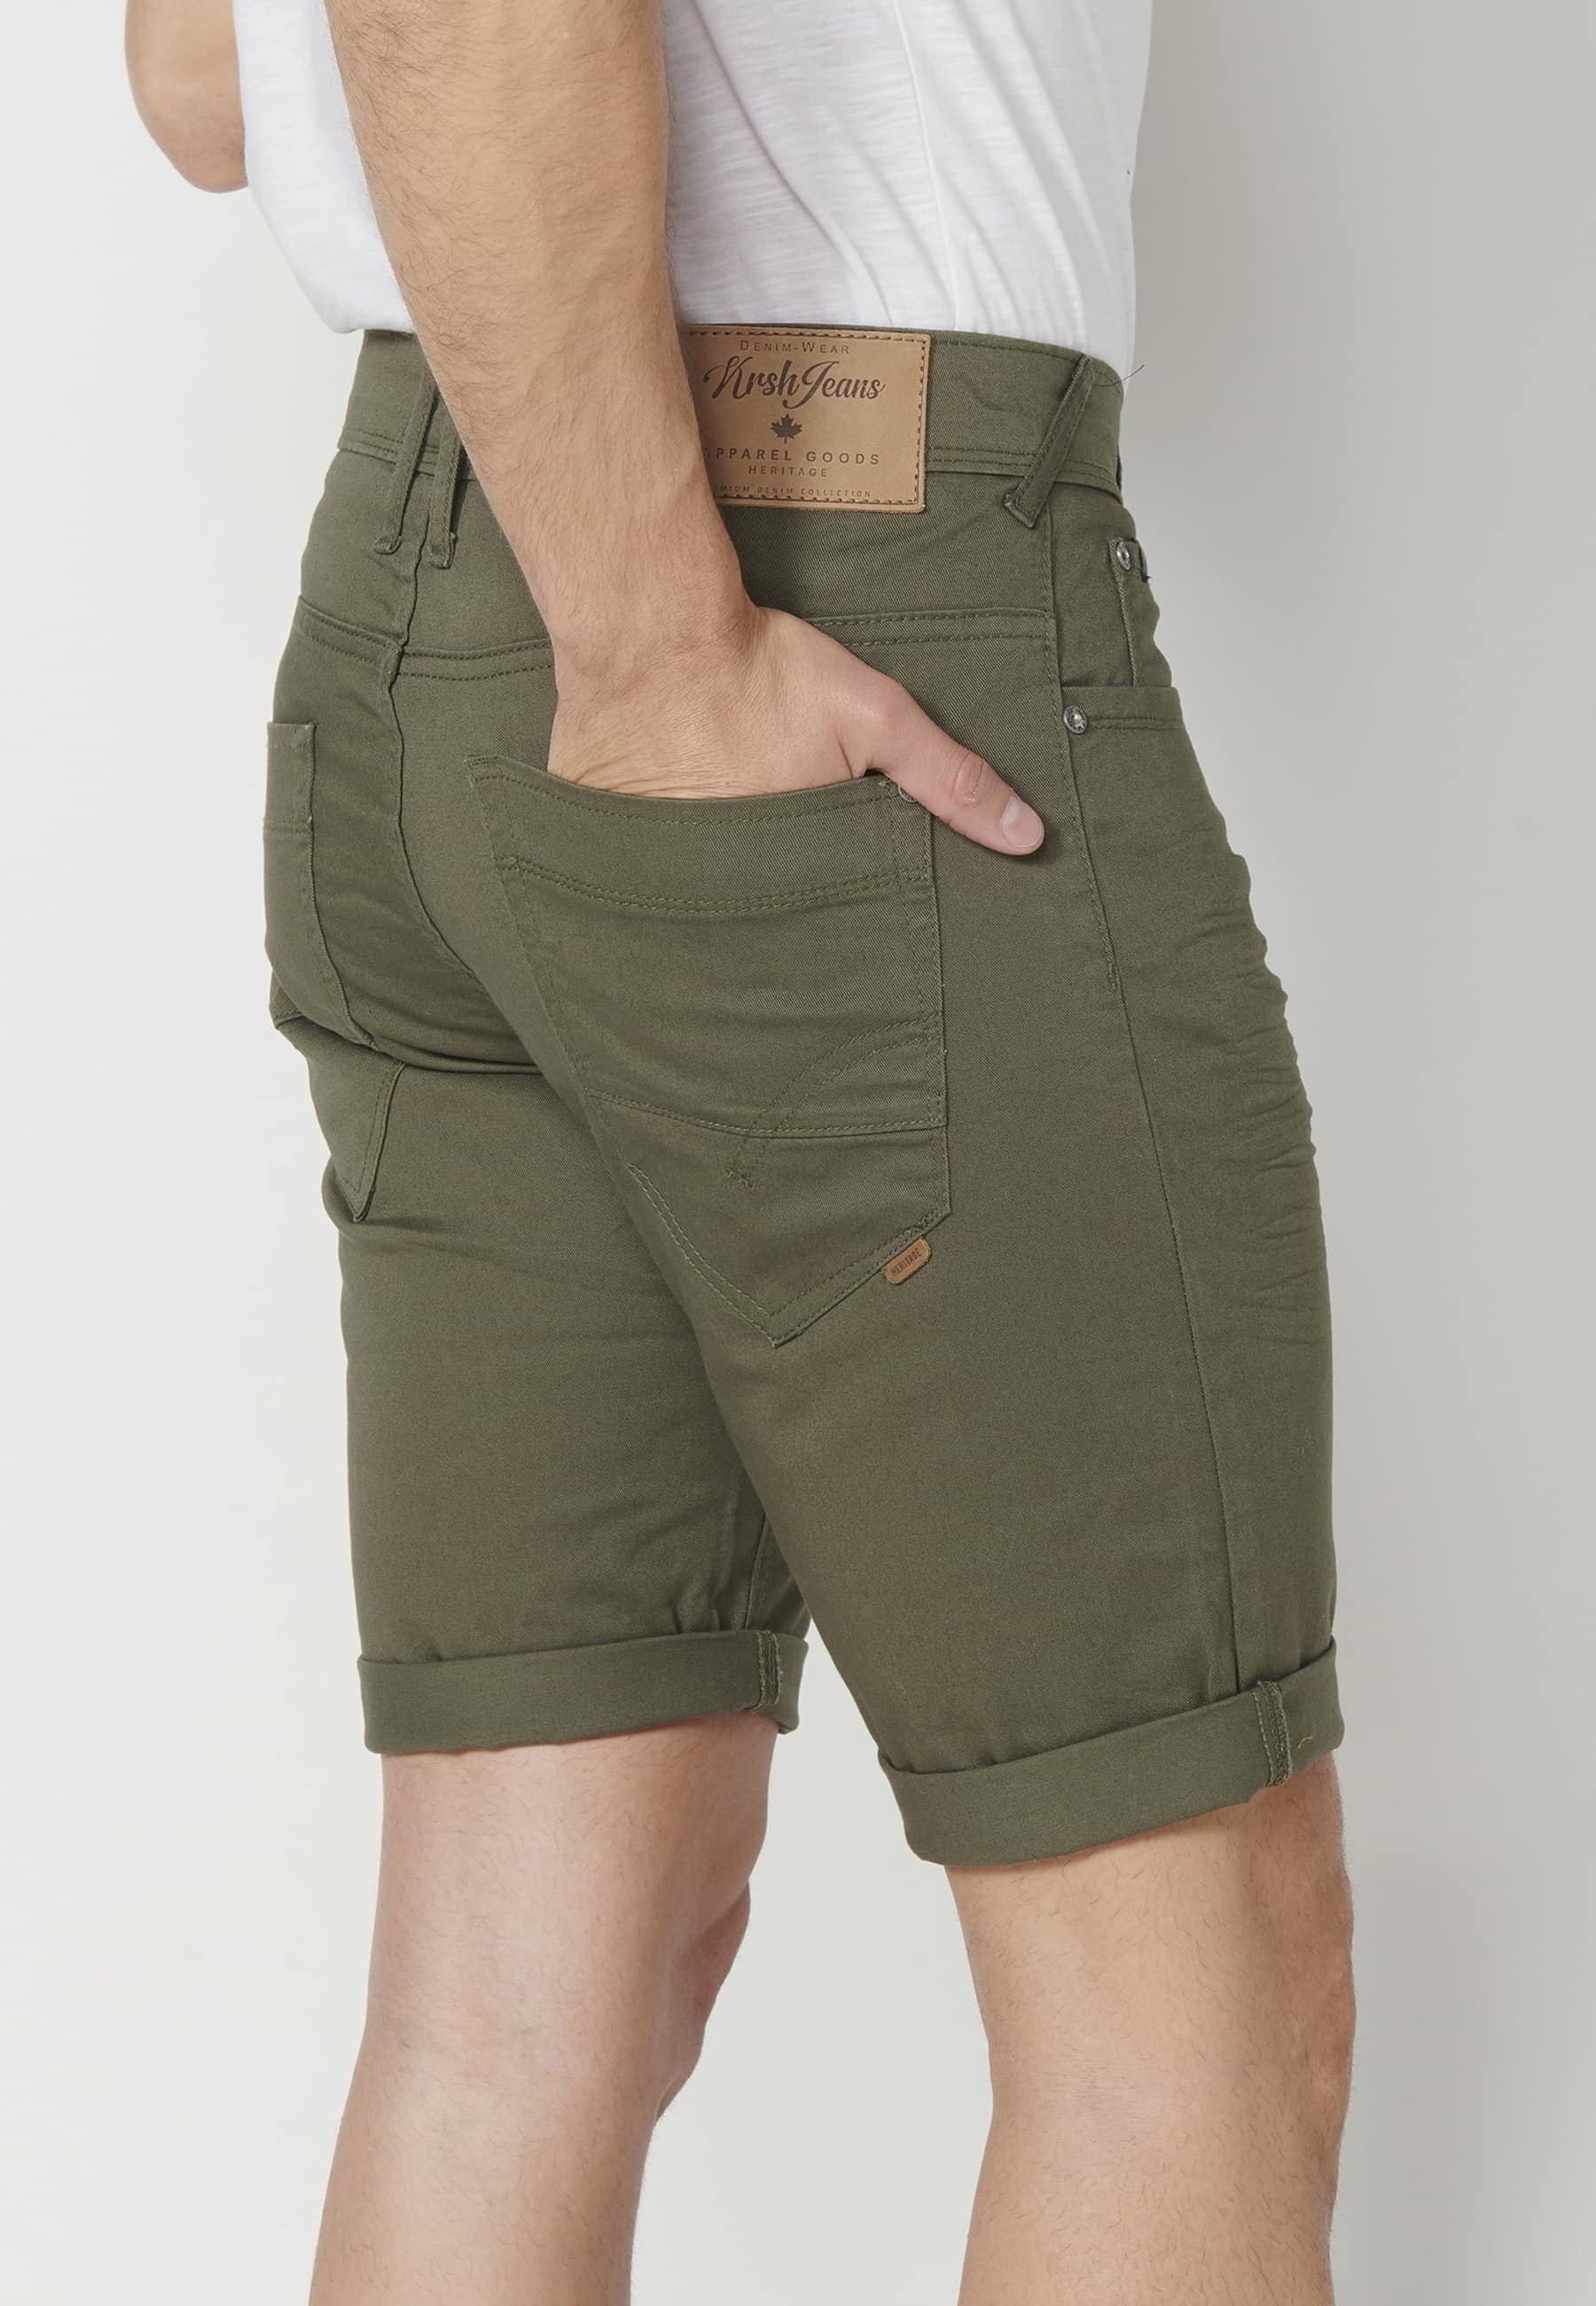 Grüne Shorts mit fünf Taschen für Herren